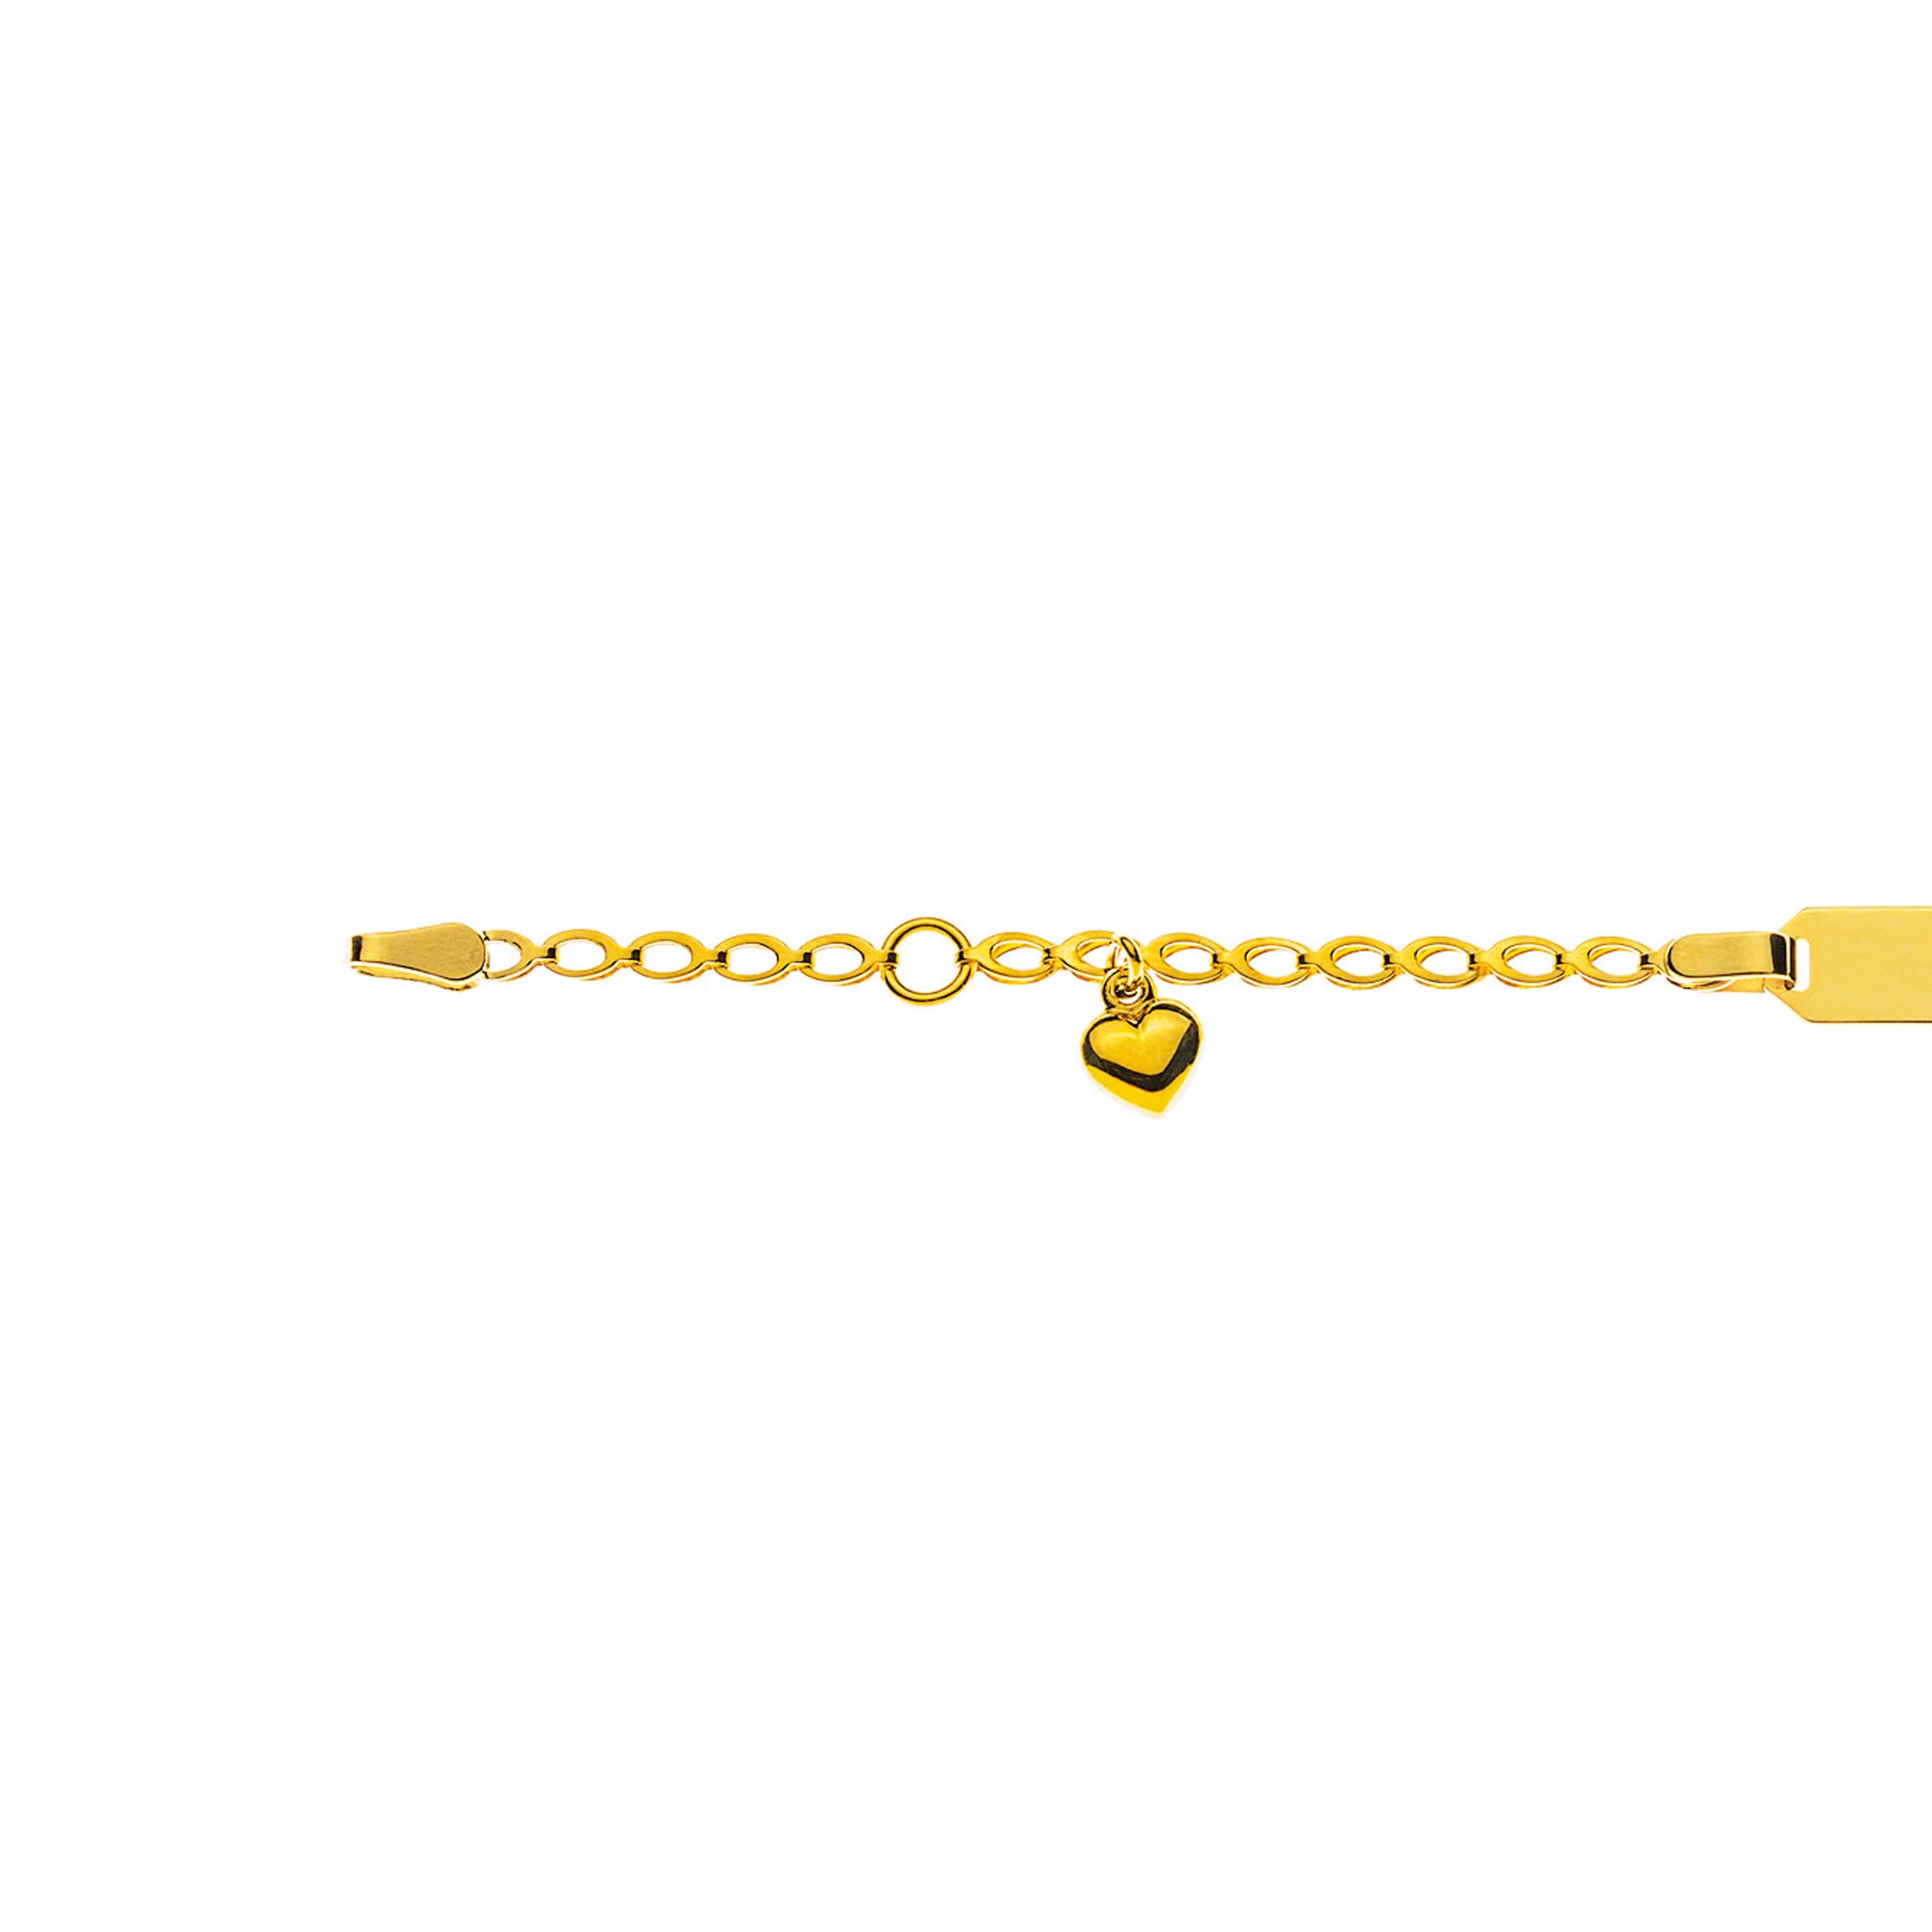 Bébé Bracelet Fantasie mit Herzli Gelbgold 750 mit Gravurplatte Rechteckig Kurz